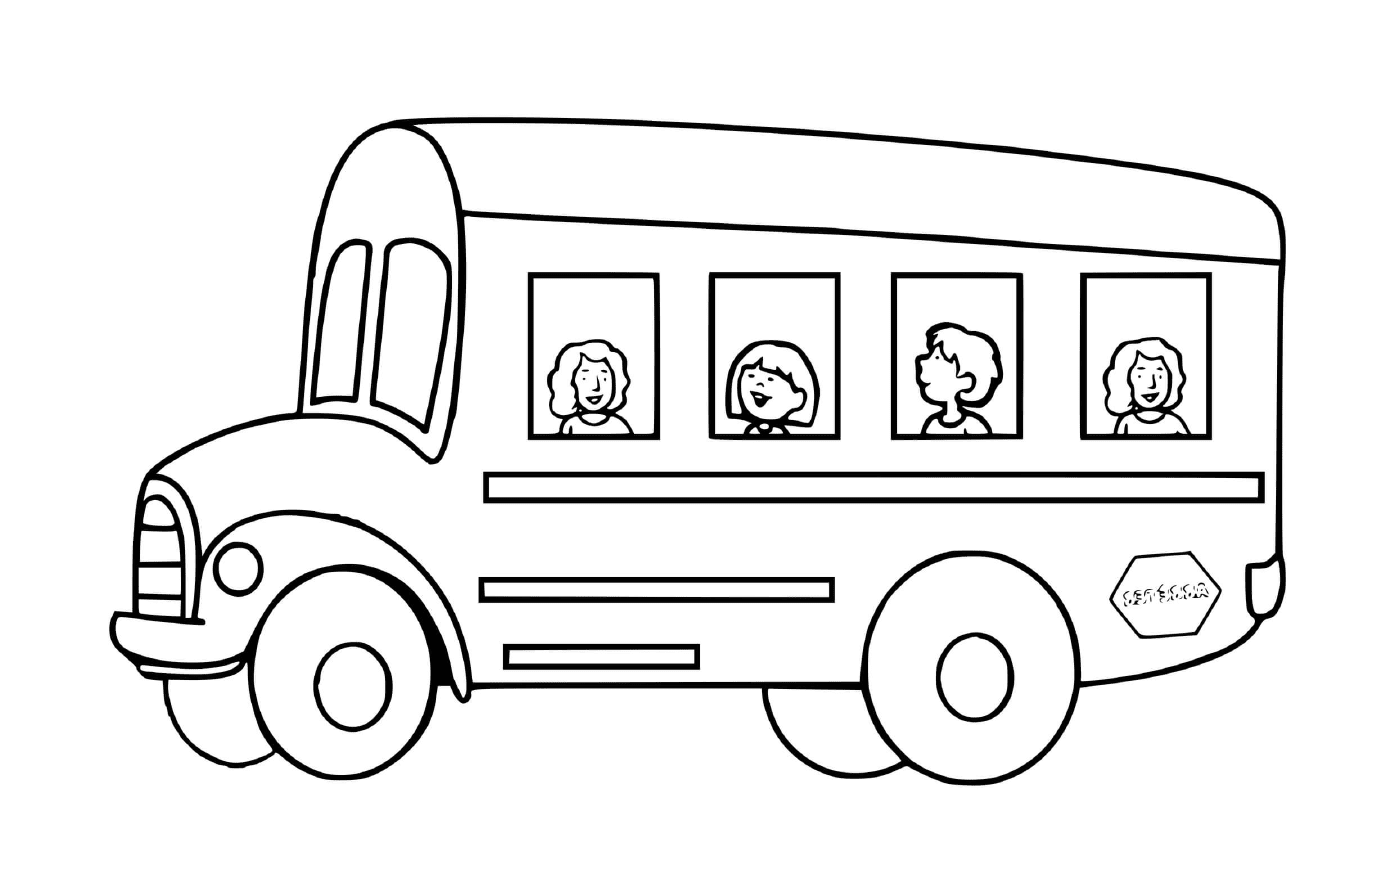  Transporte escolar para crianças: o ônibus 